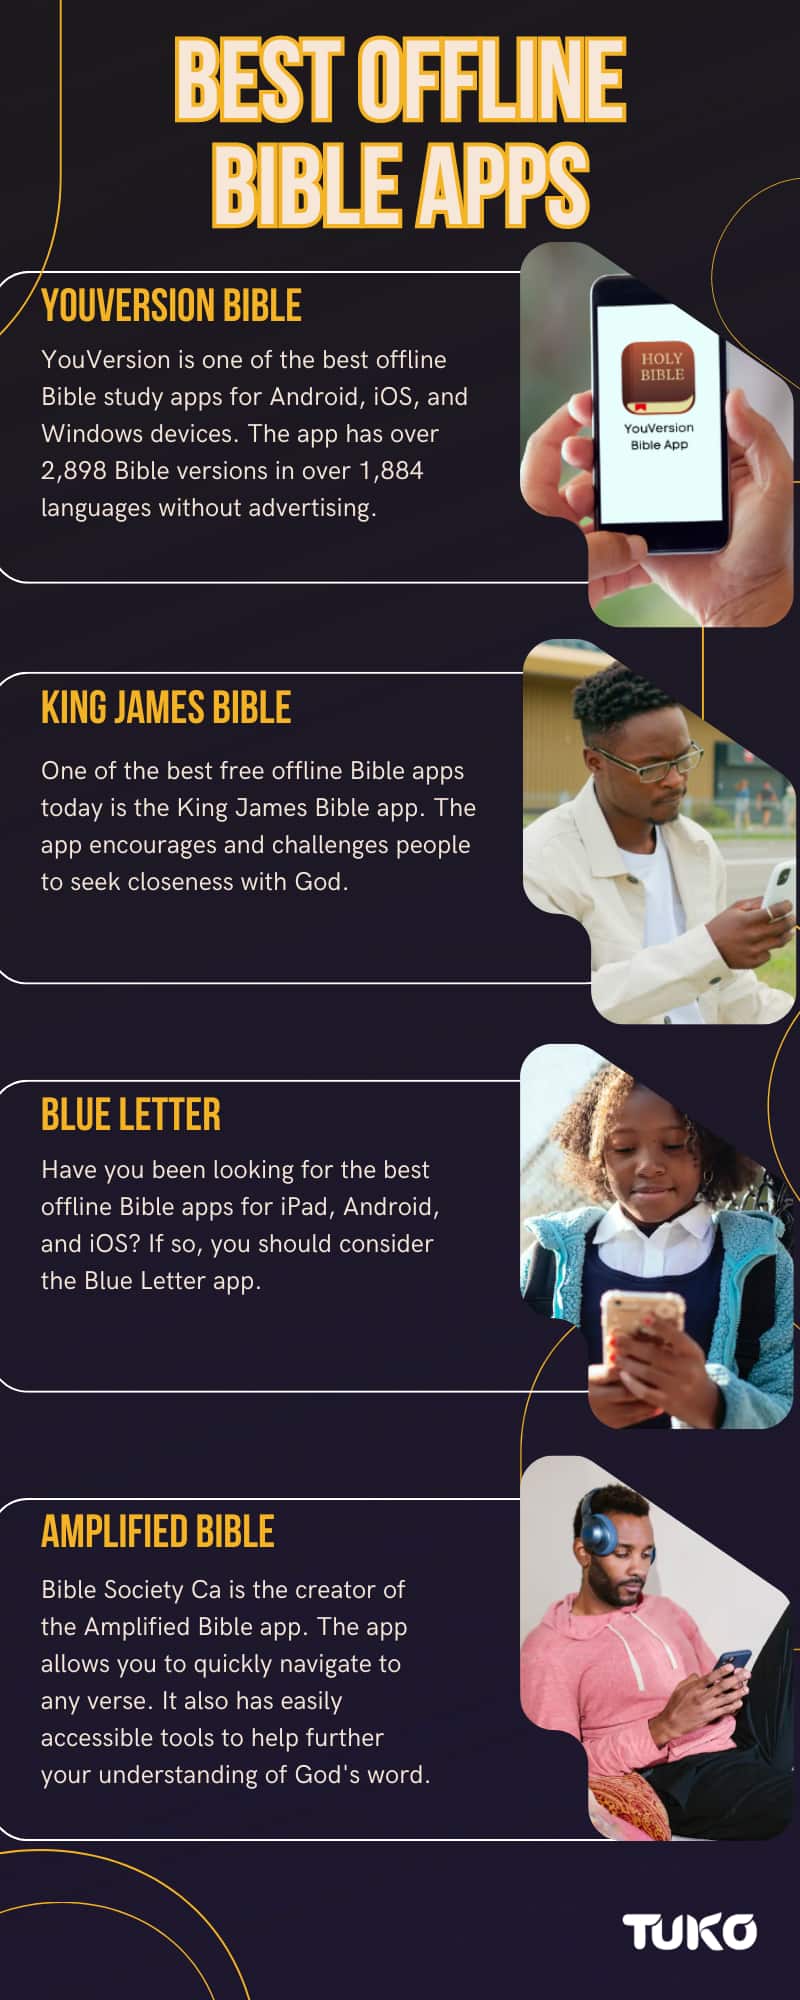 Best offline Bible apps